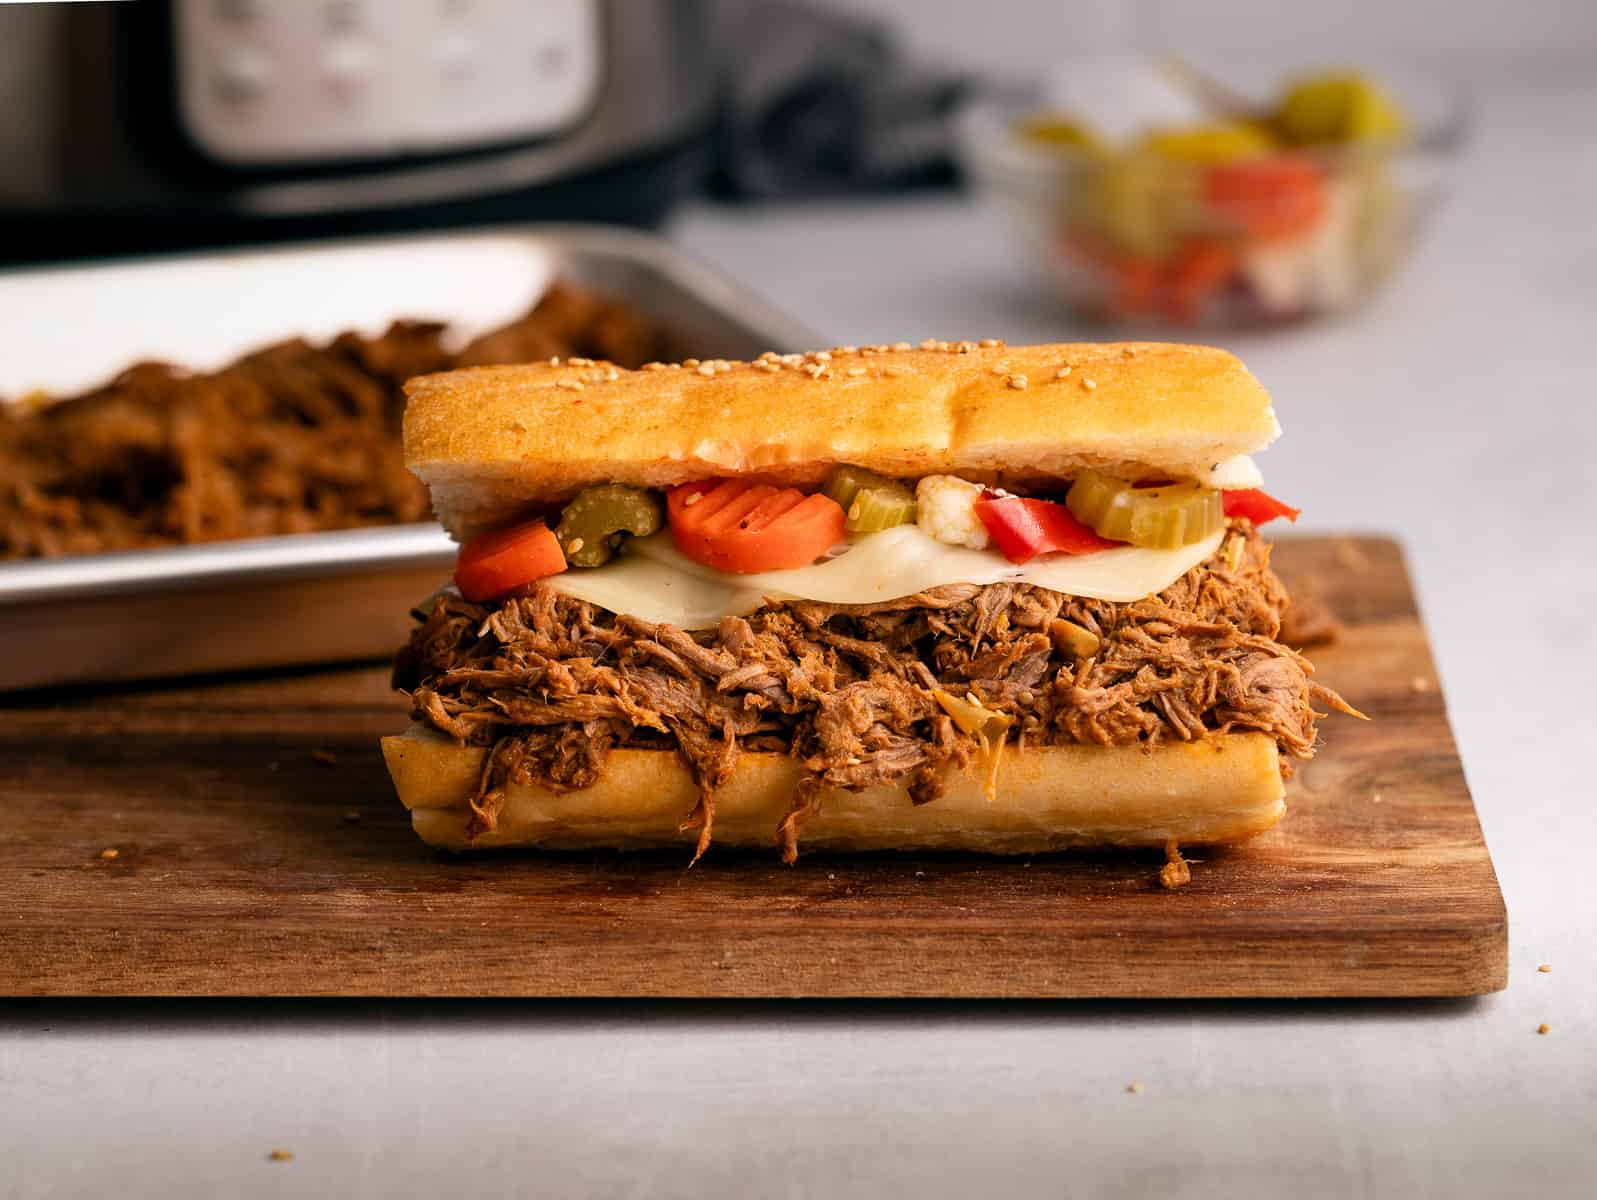 Italian beef sandwich on wooden board.